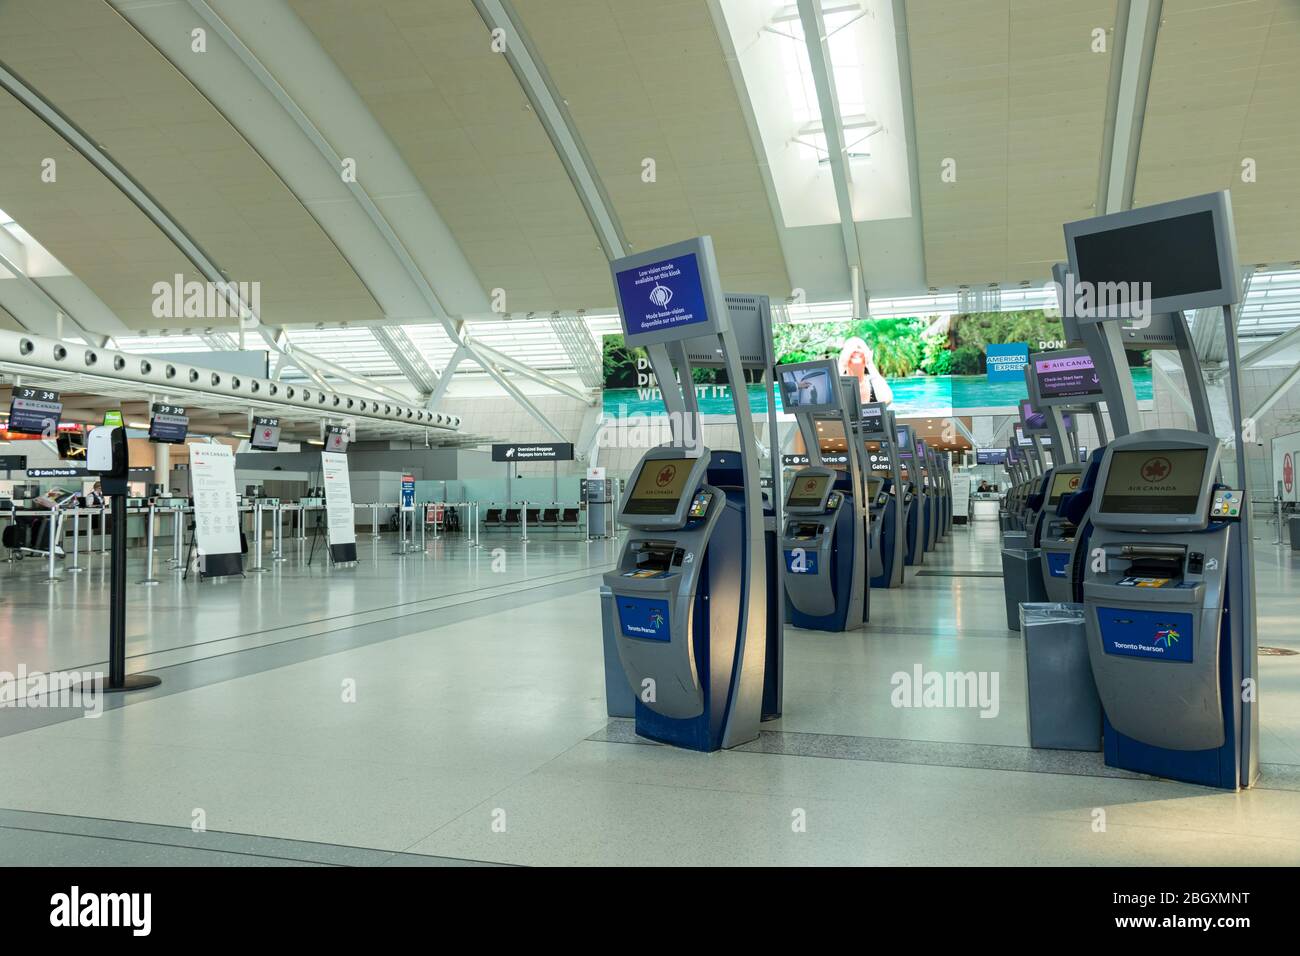 Leeren Sie den Check-in-Bereich von Air Canada im Terminal 1 im internationalen Flughafen Toronto Pearson. Flughafen während der weltweiten Pandemie des COVID-19 Coronavirus. Stockfoto